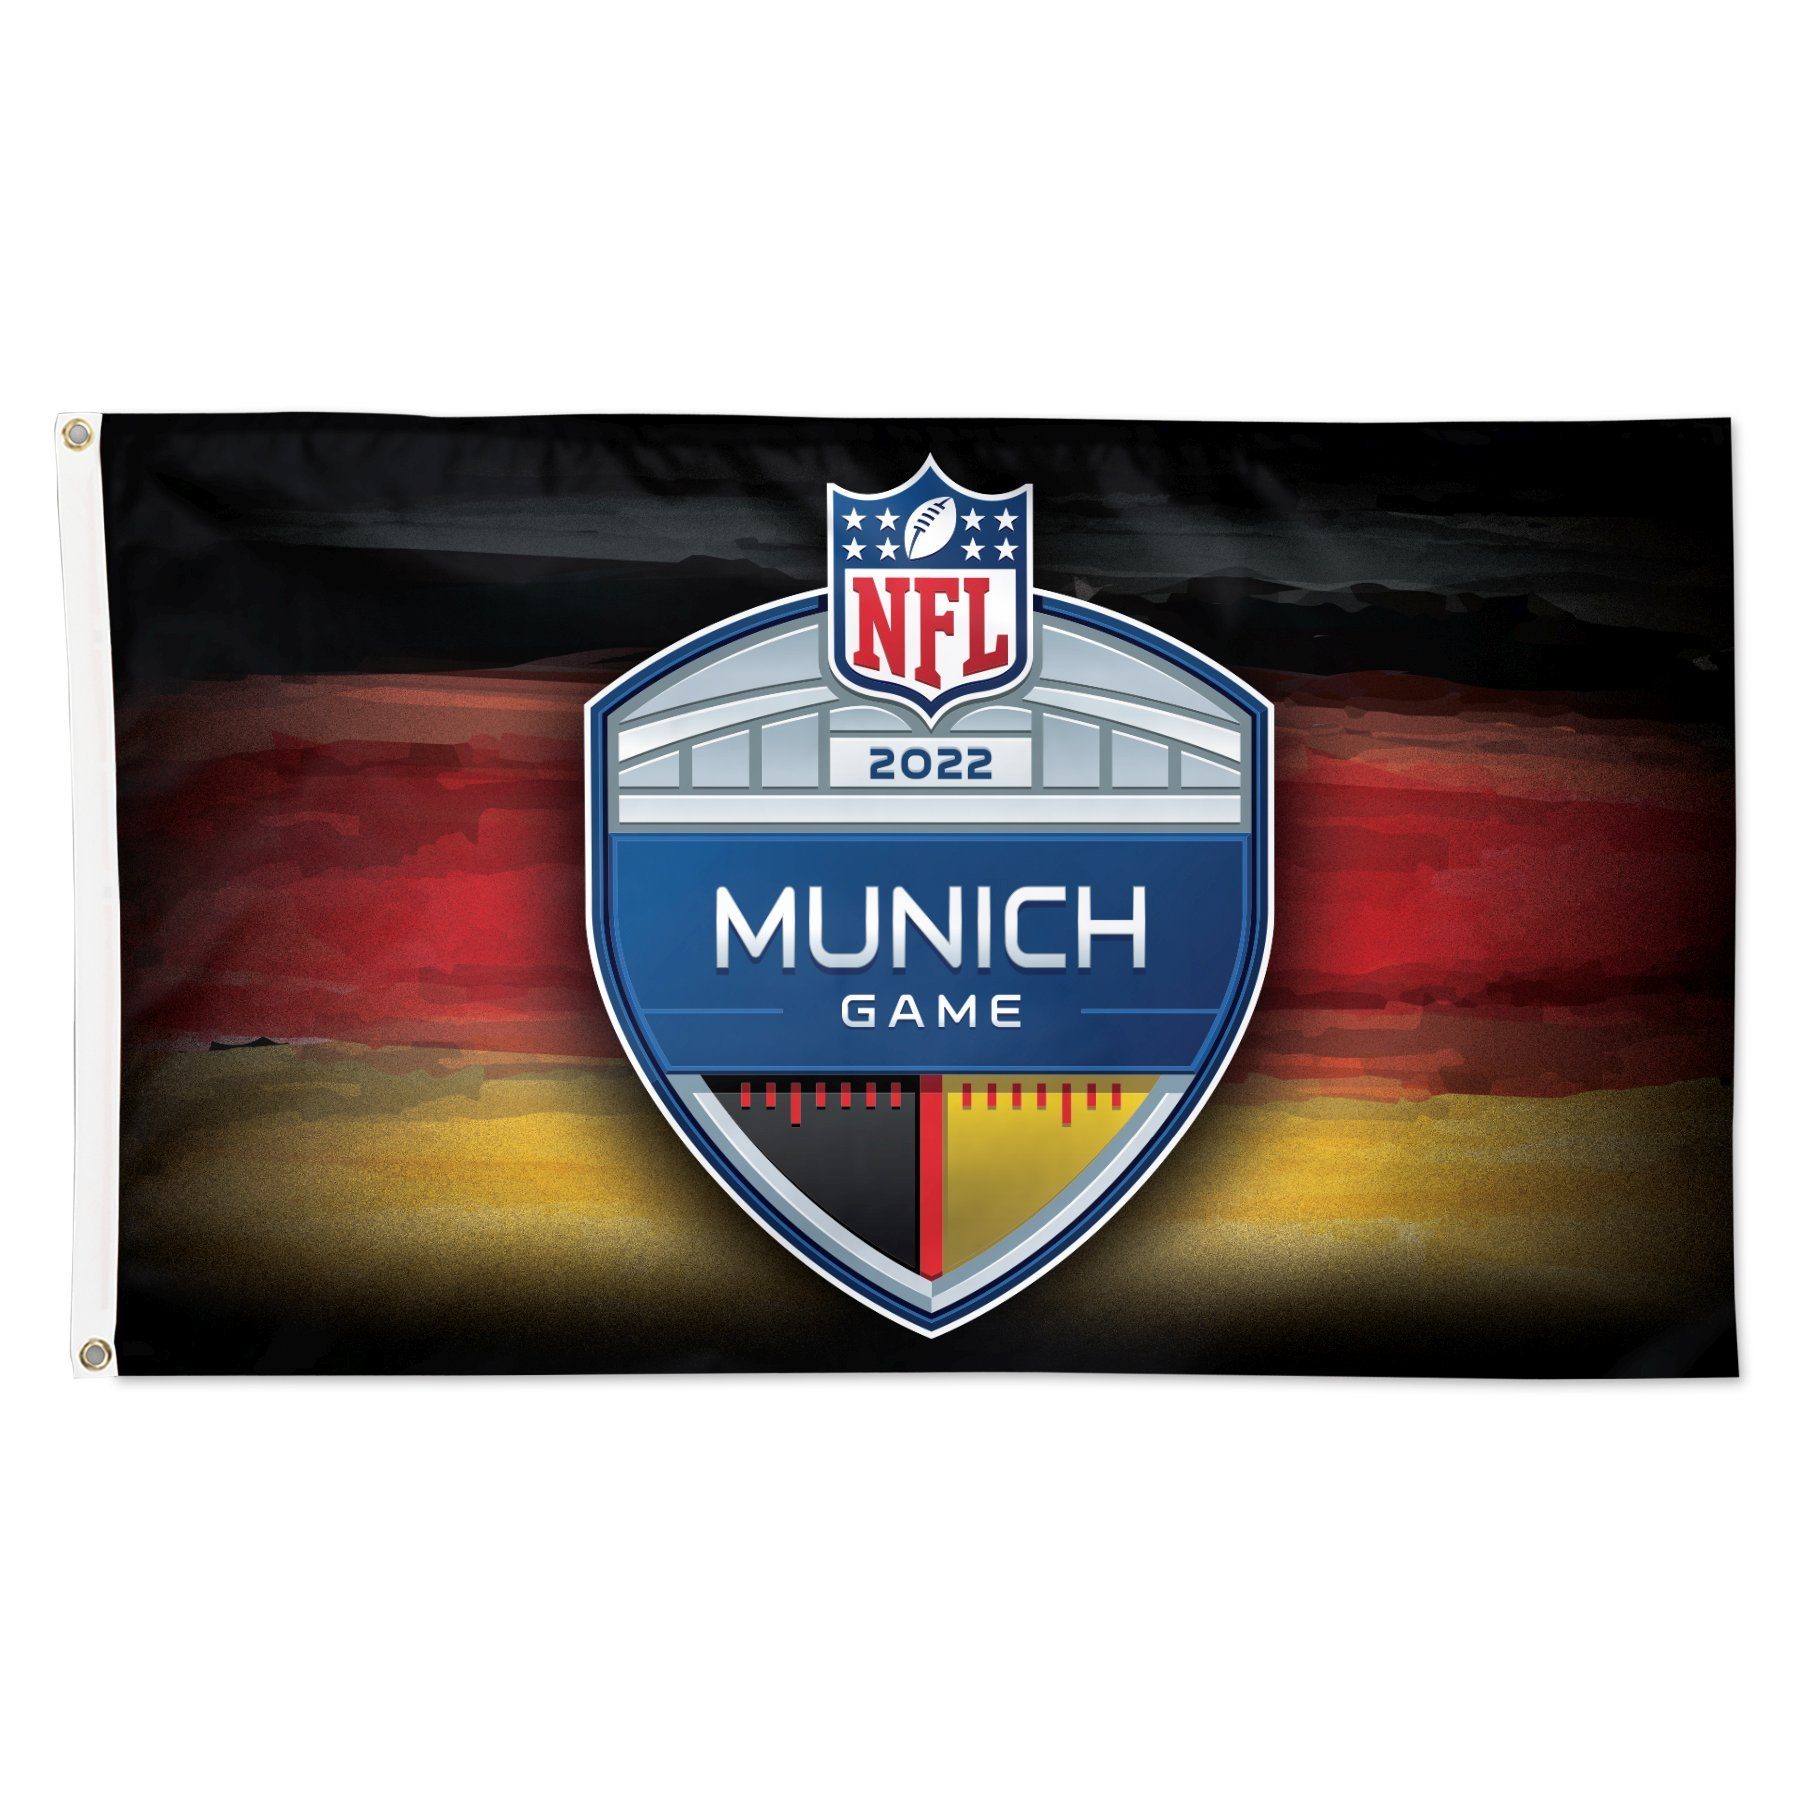 WinCraft Wanddekoobjekt NFL Banner 150x90cm NFL Game Buccs Seahwaks